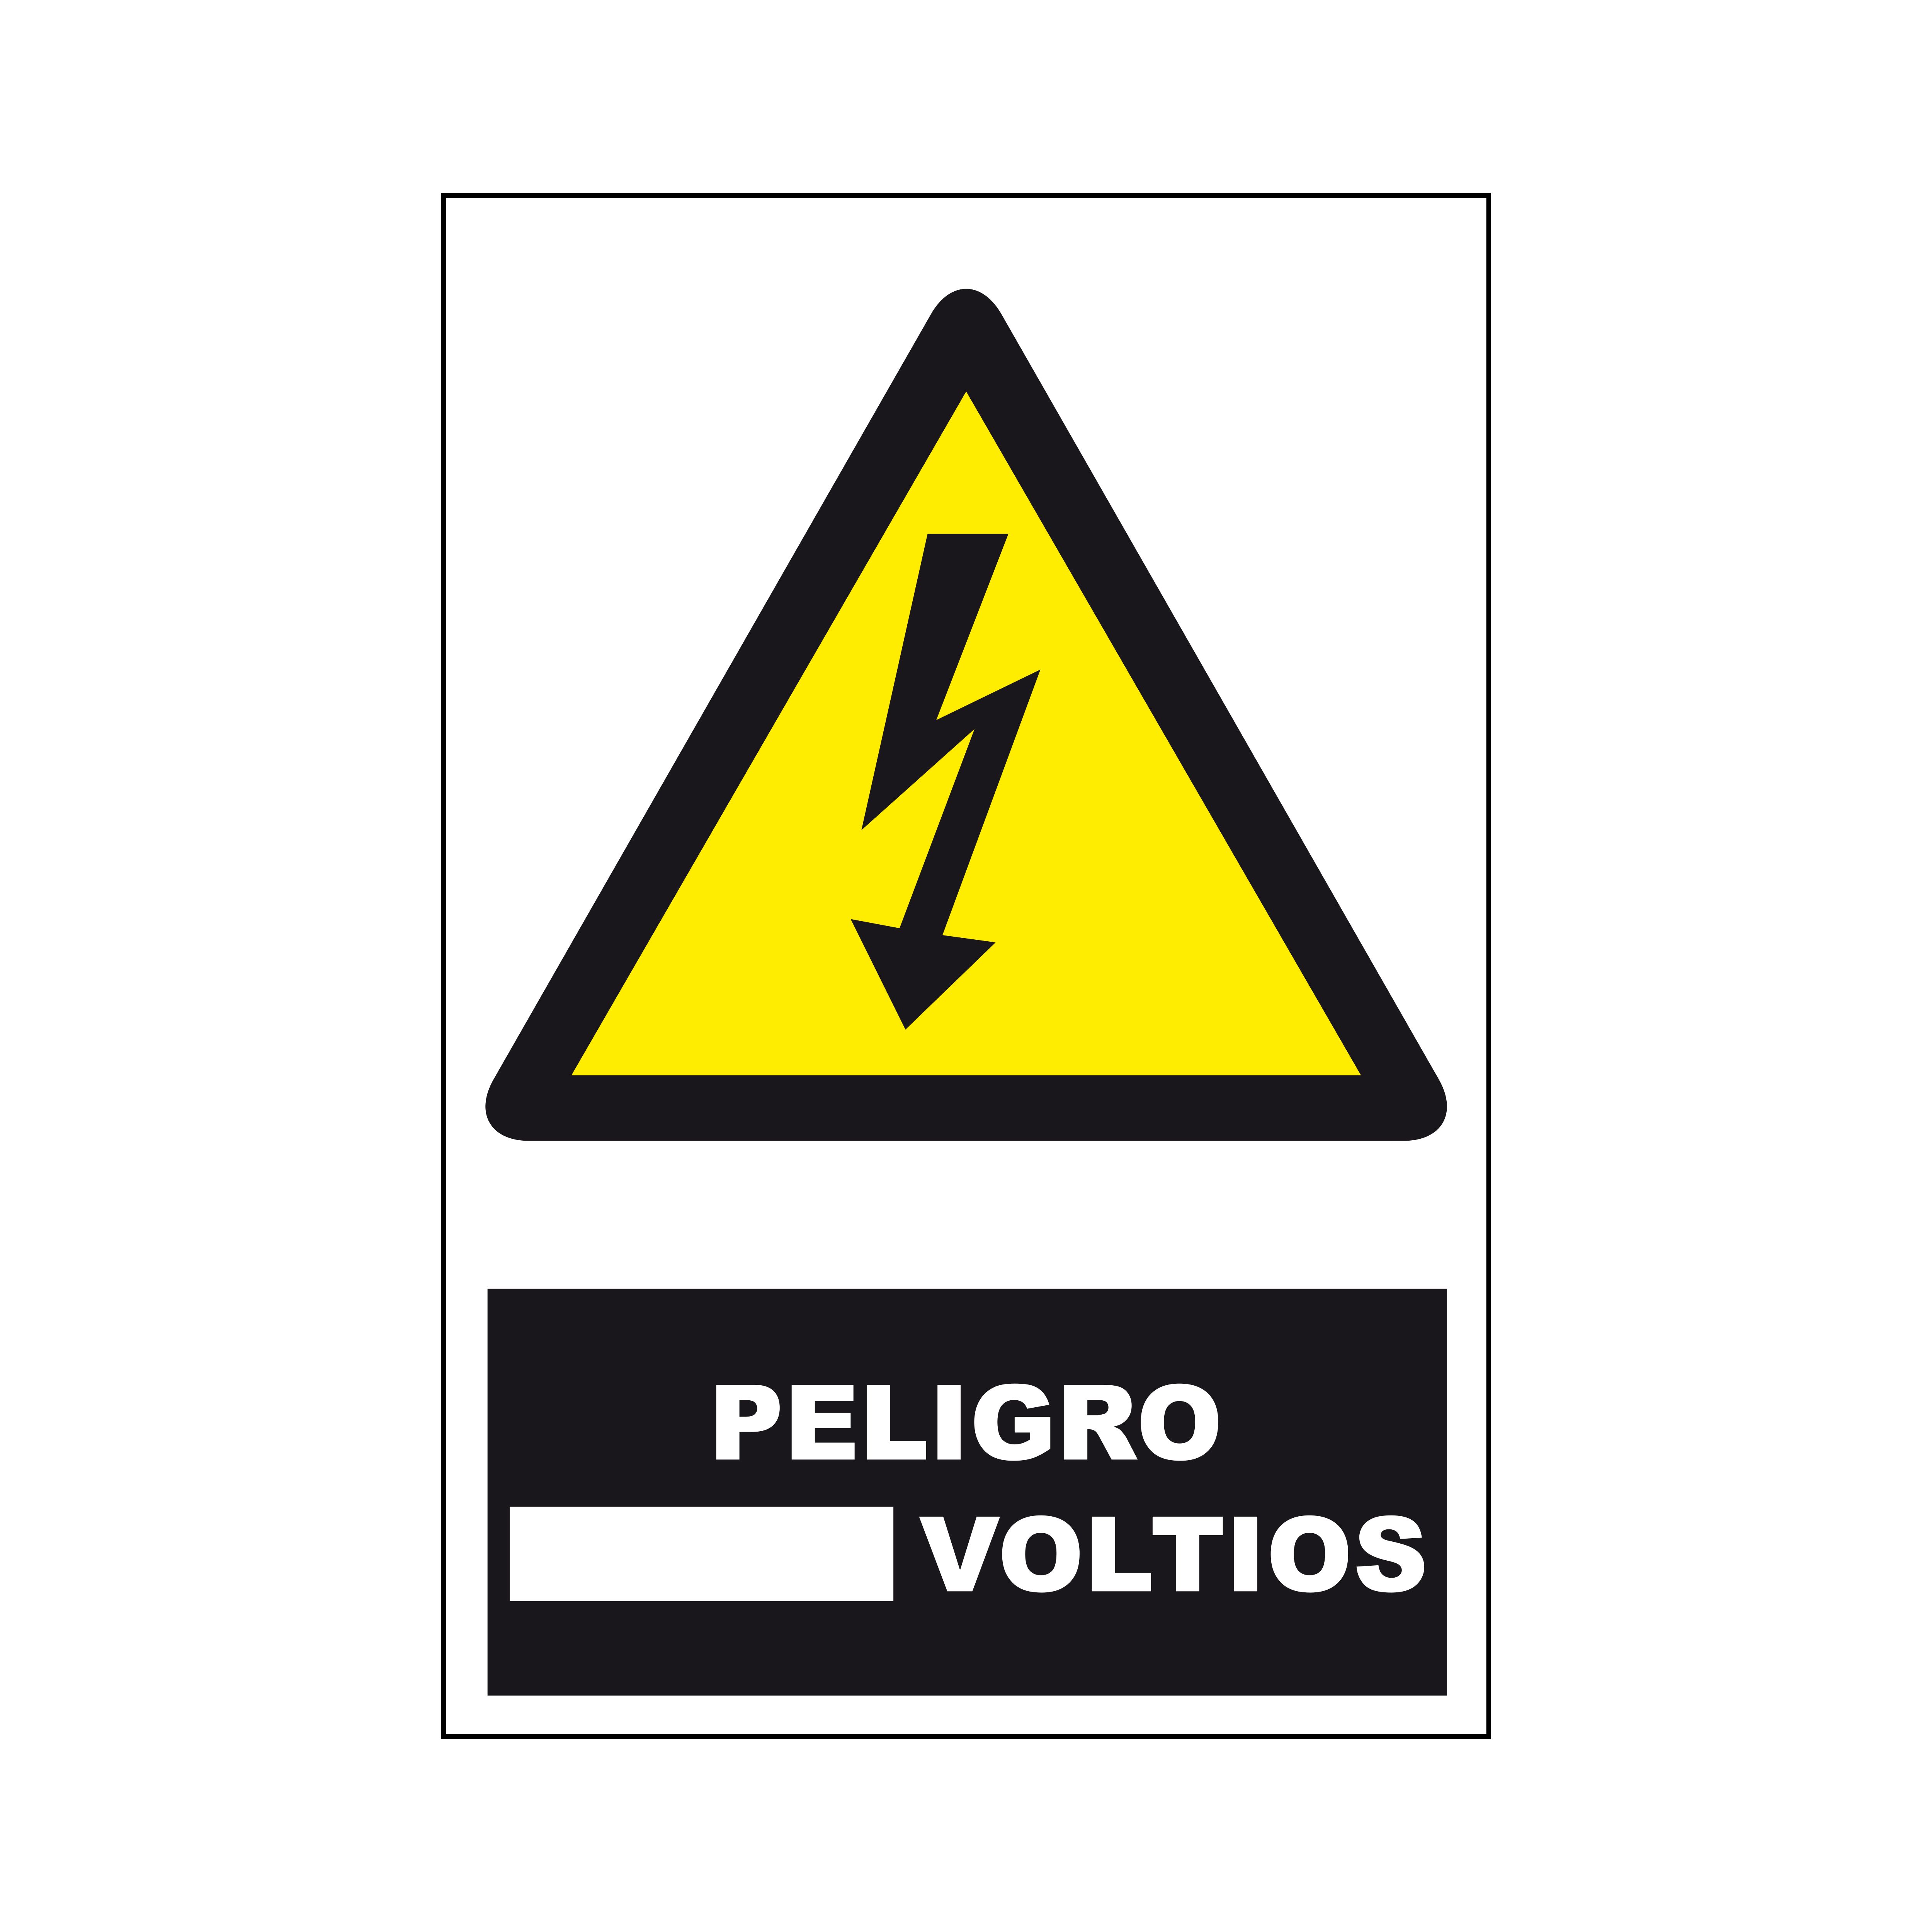 Etiqueta de advertencia y de peligro con pictograma: Danger High Voltage, texto en: Español "Peligro Voltios", 170mm x